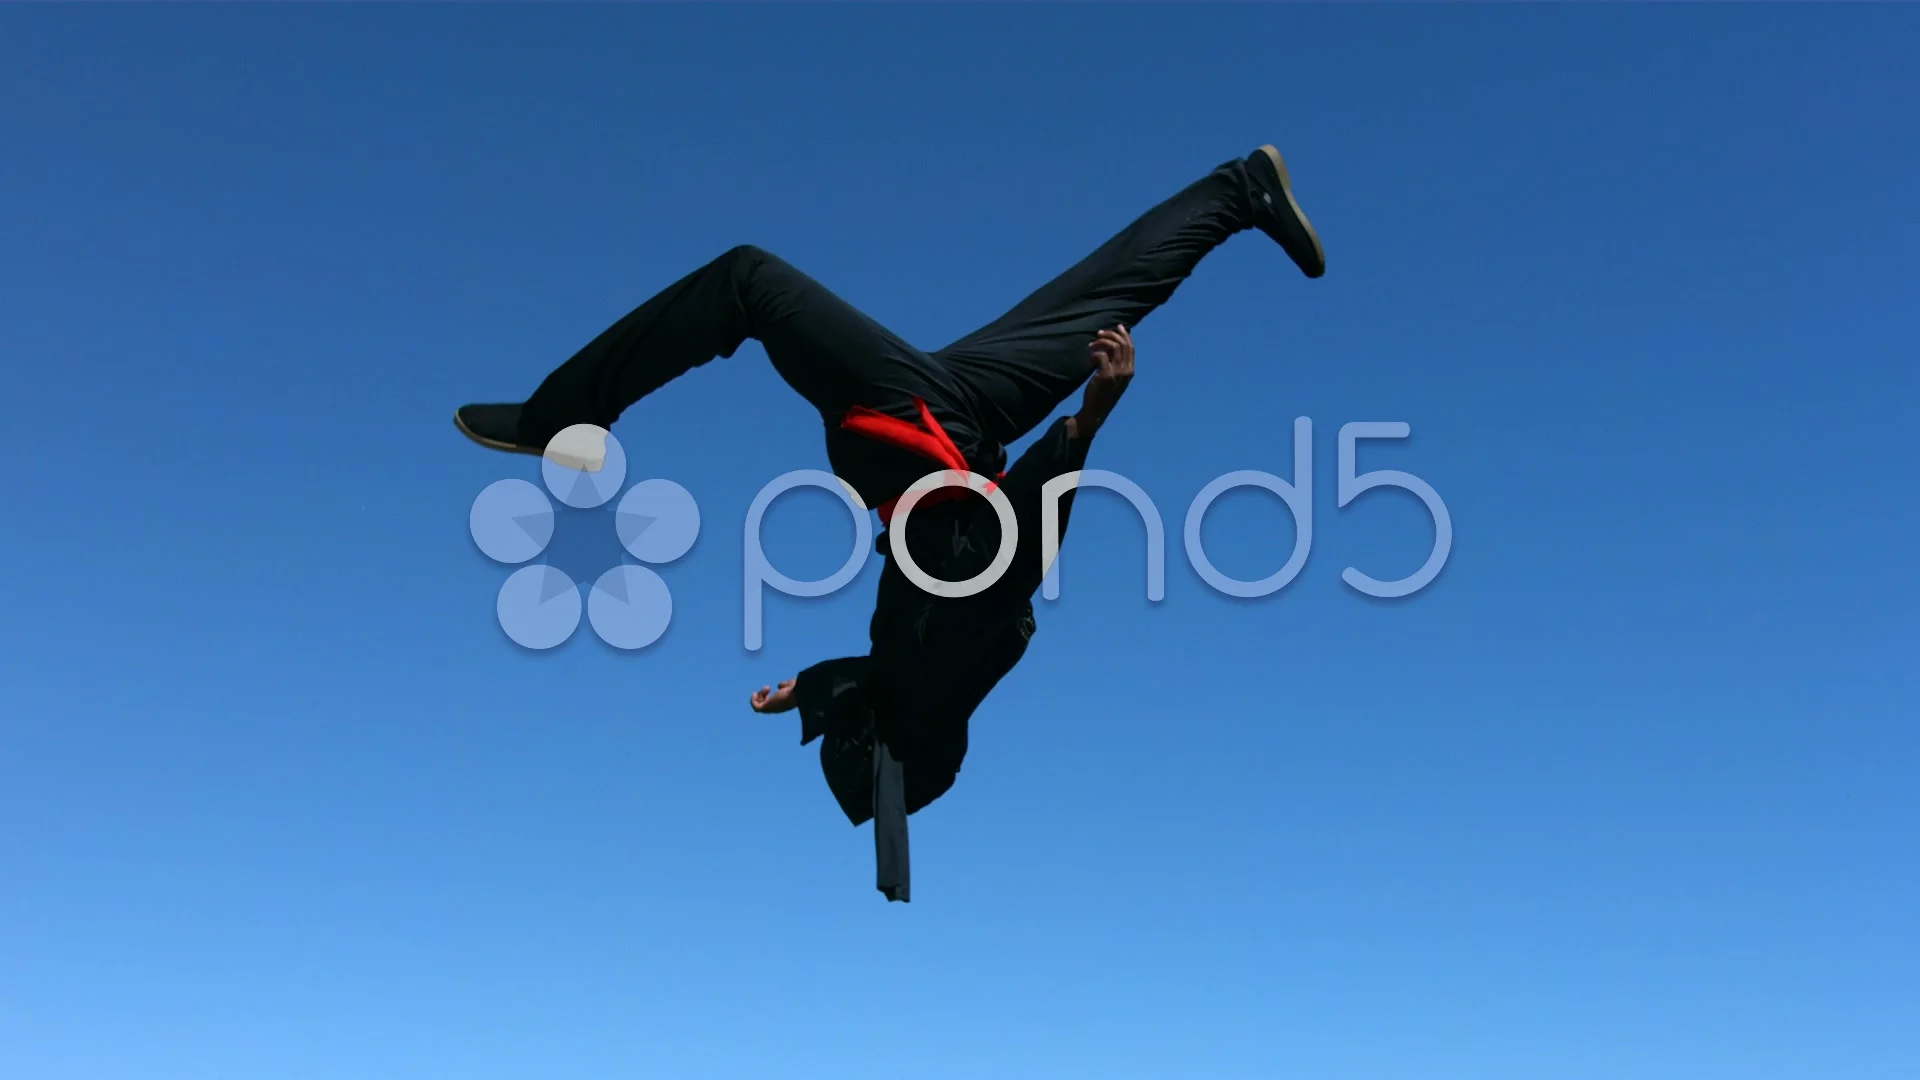 https://images.pond5.com/ninja-flips-air-slow-motion-032716950_prevstill.jpeg